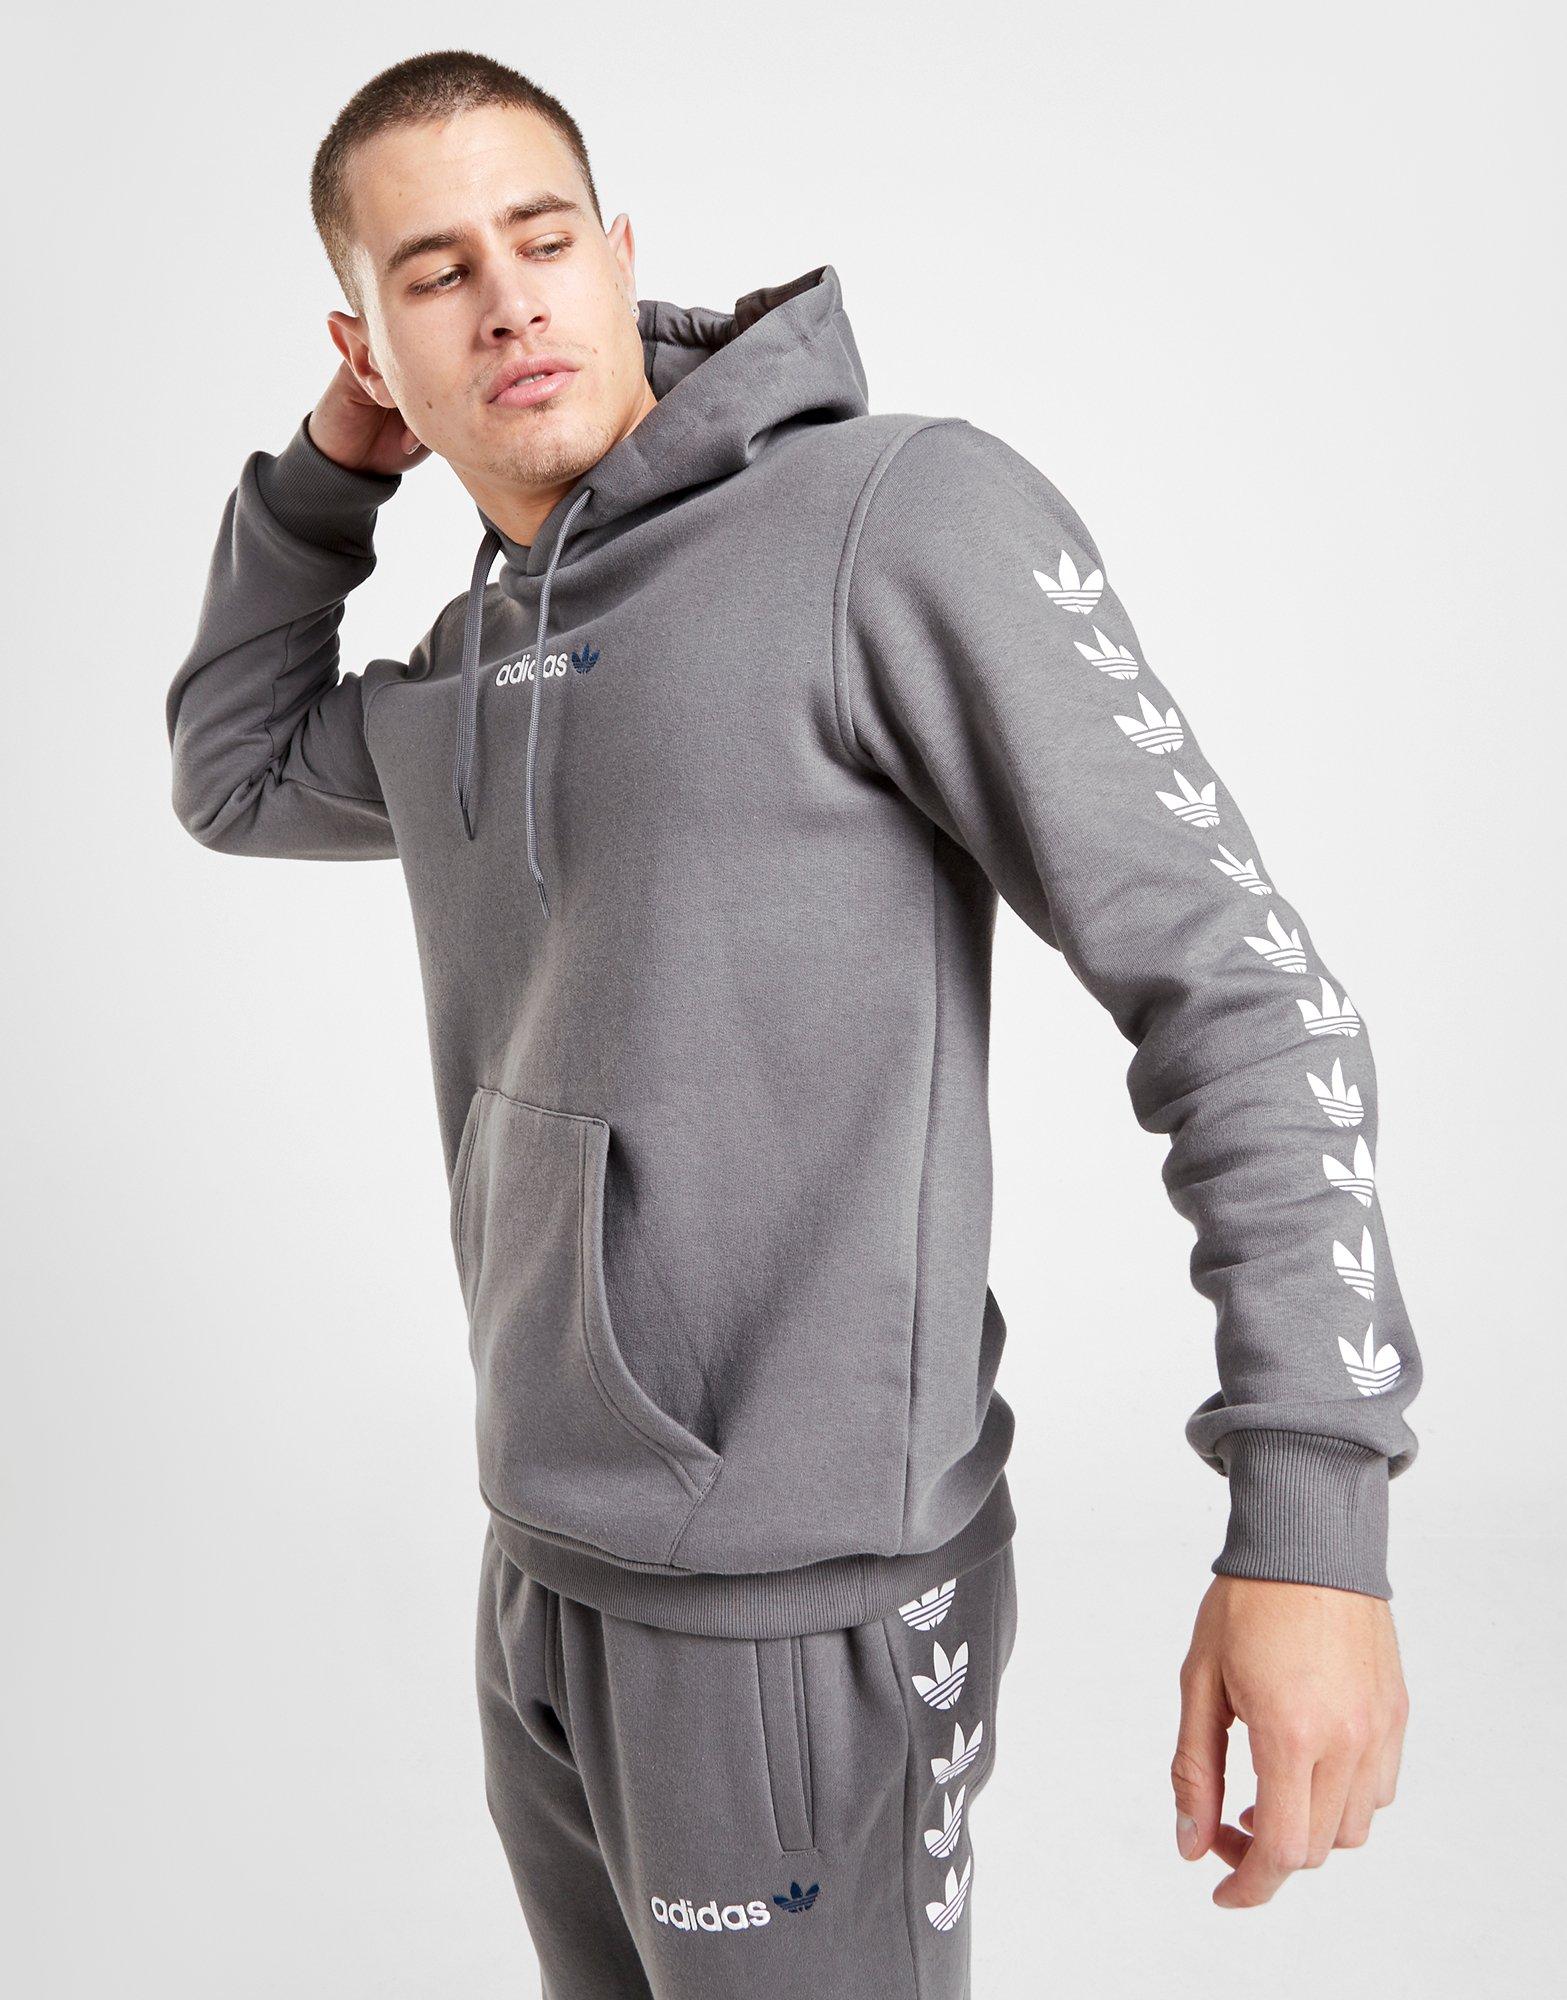 grey trefoil adidas hoodie